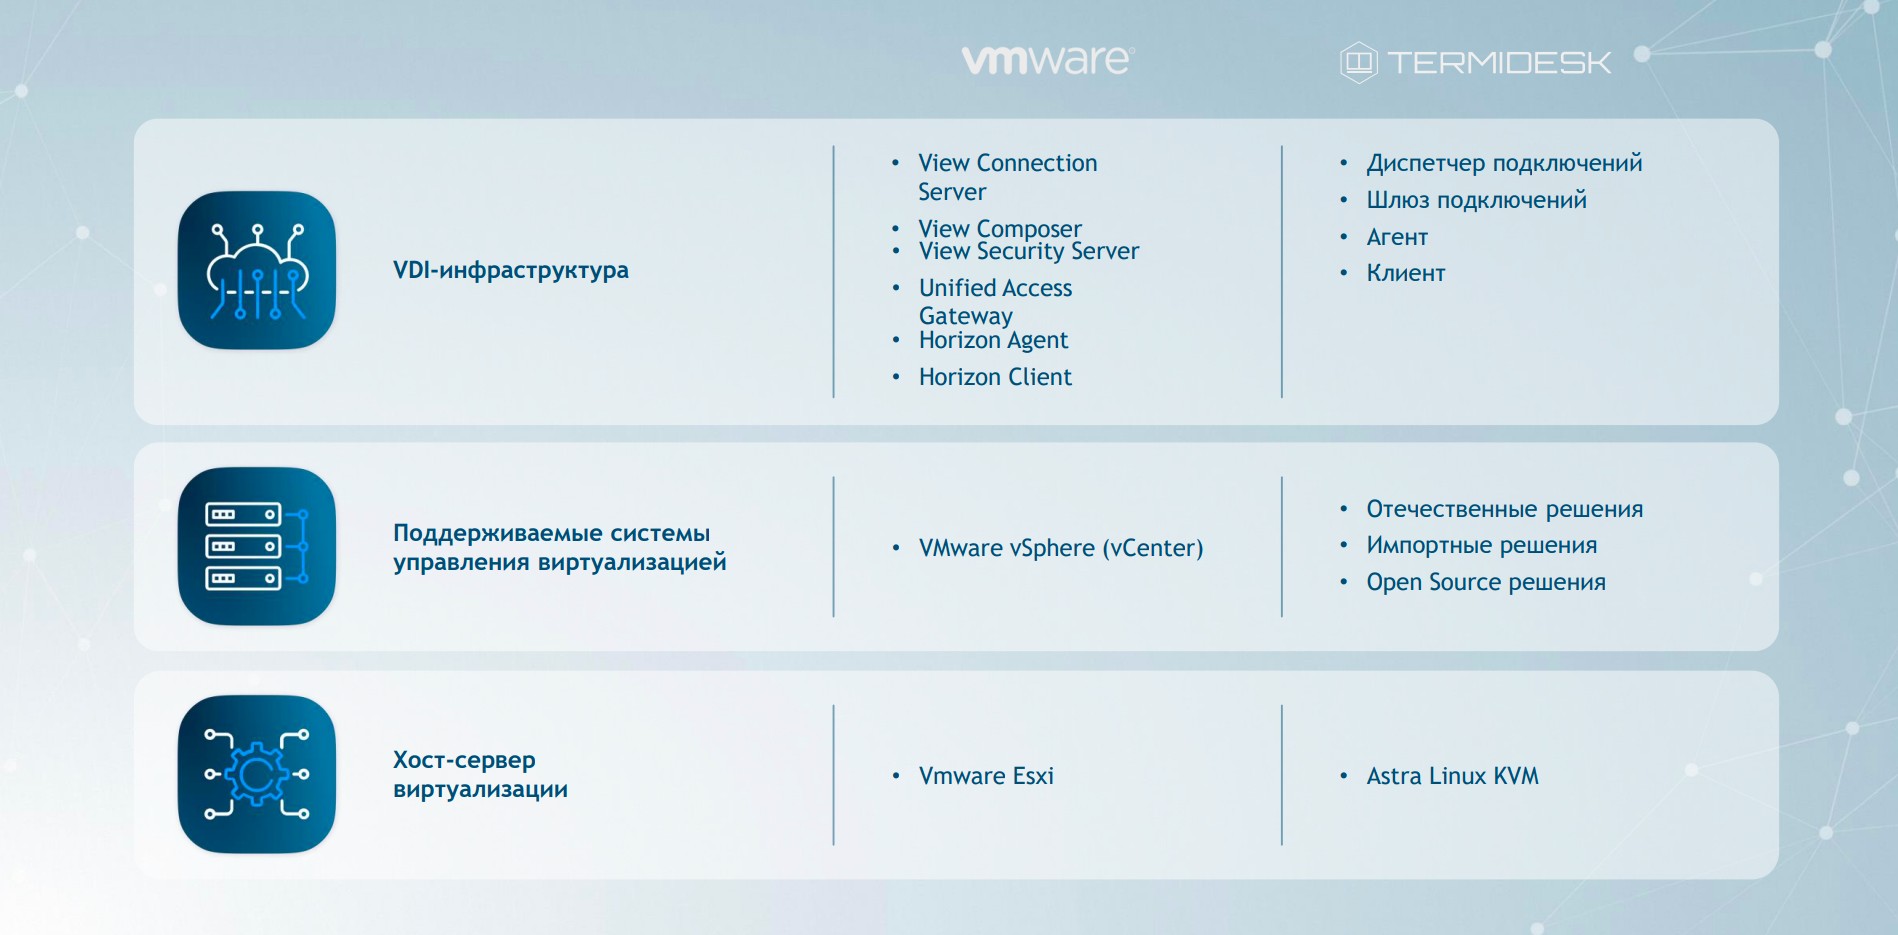 Сравнение принципов построения VDI на примере решения VMware и Termidesk